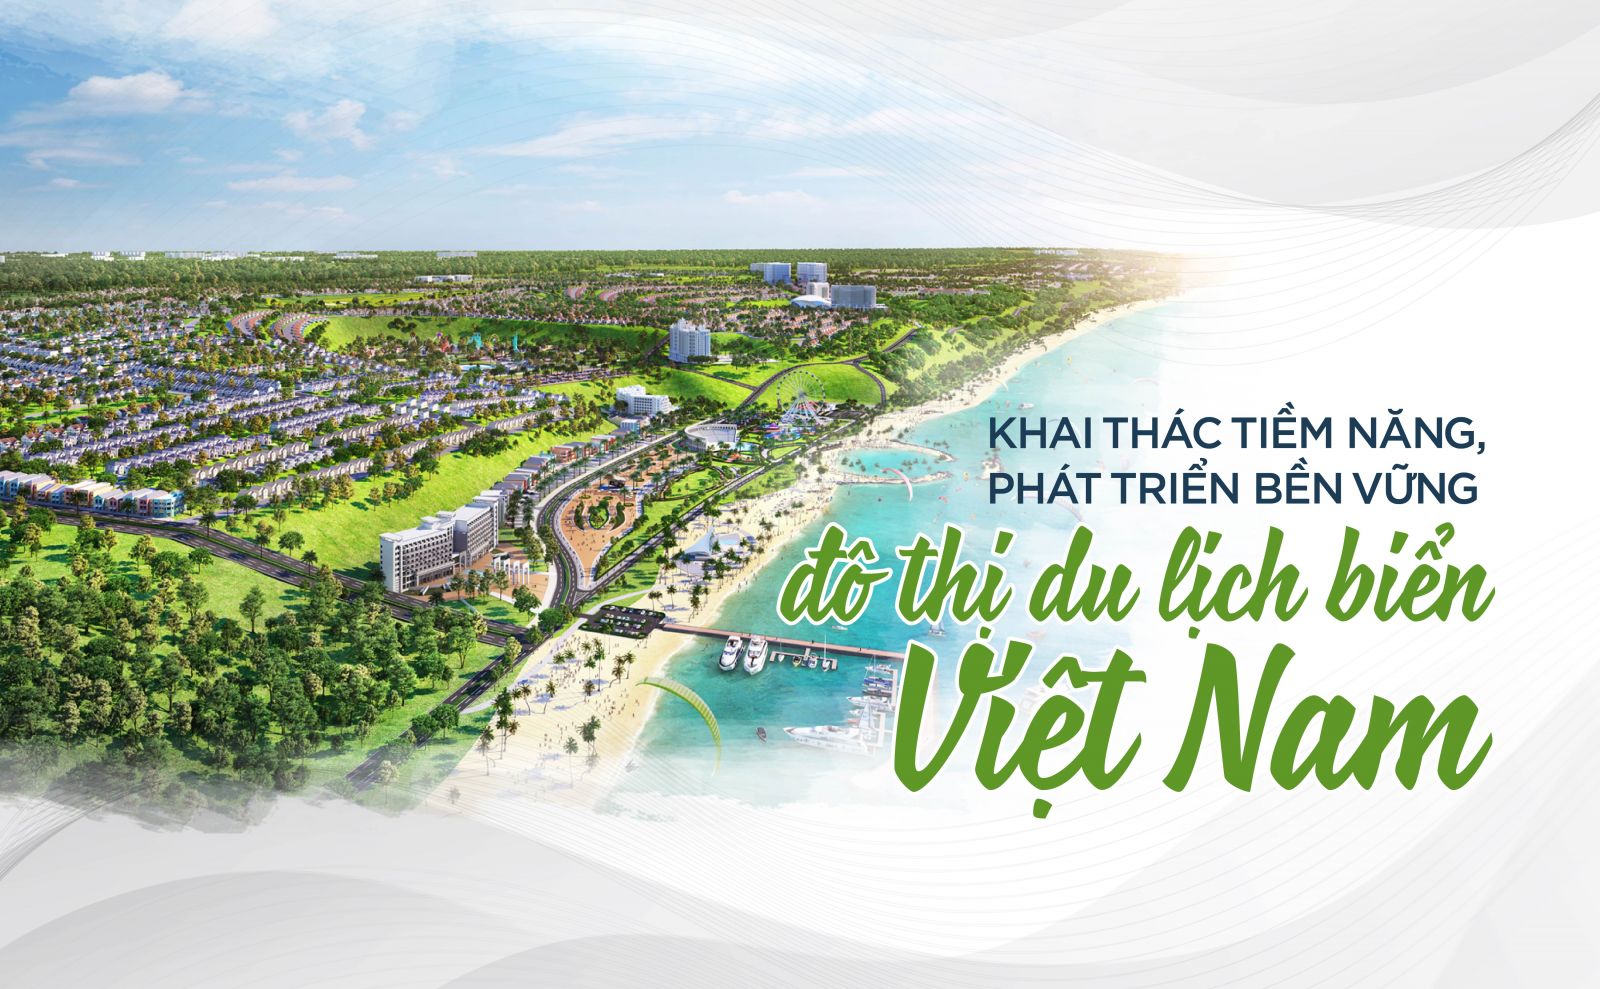 Khai thác tiềm năng, phát triển bền vững đô thị du lịch biển Việt Nam